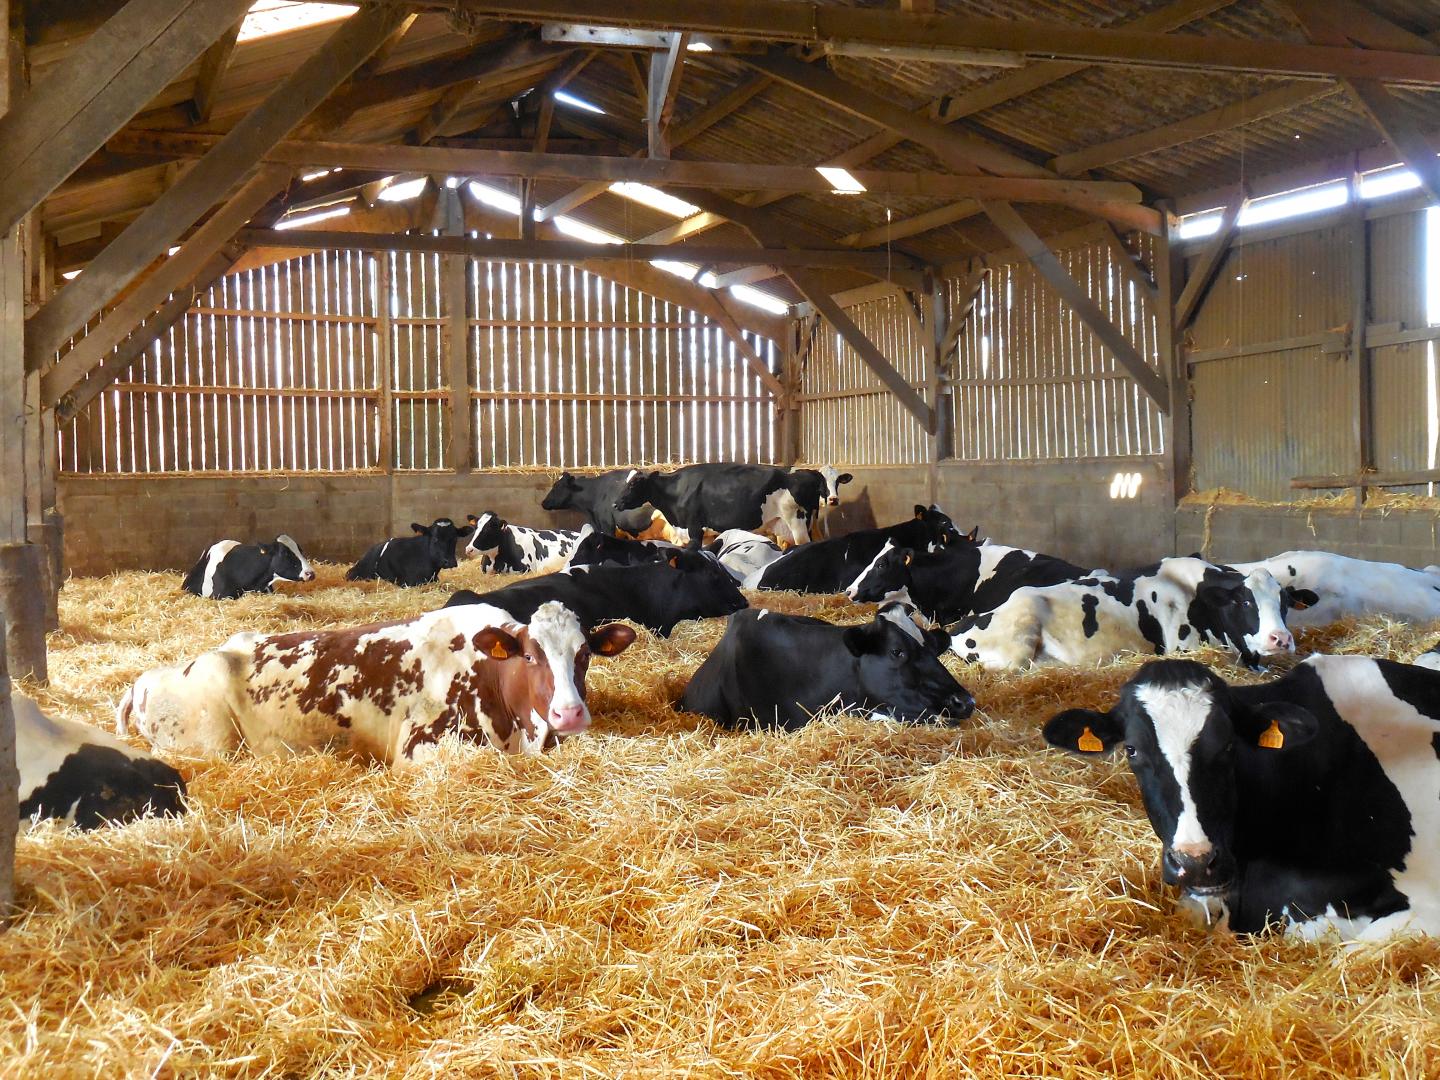 Cows In Barn [image] Eurekalert Science News Releases